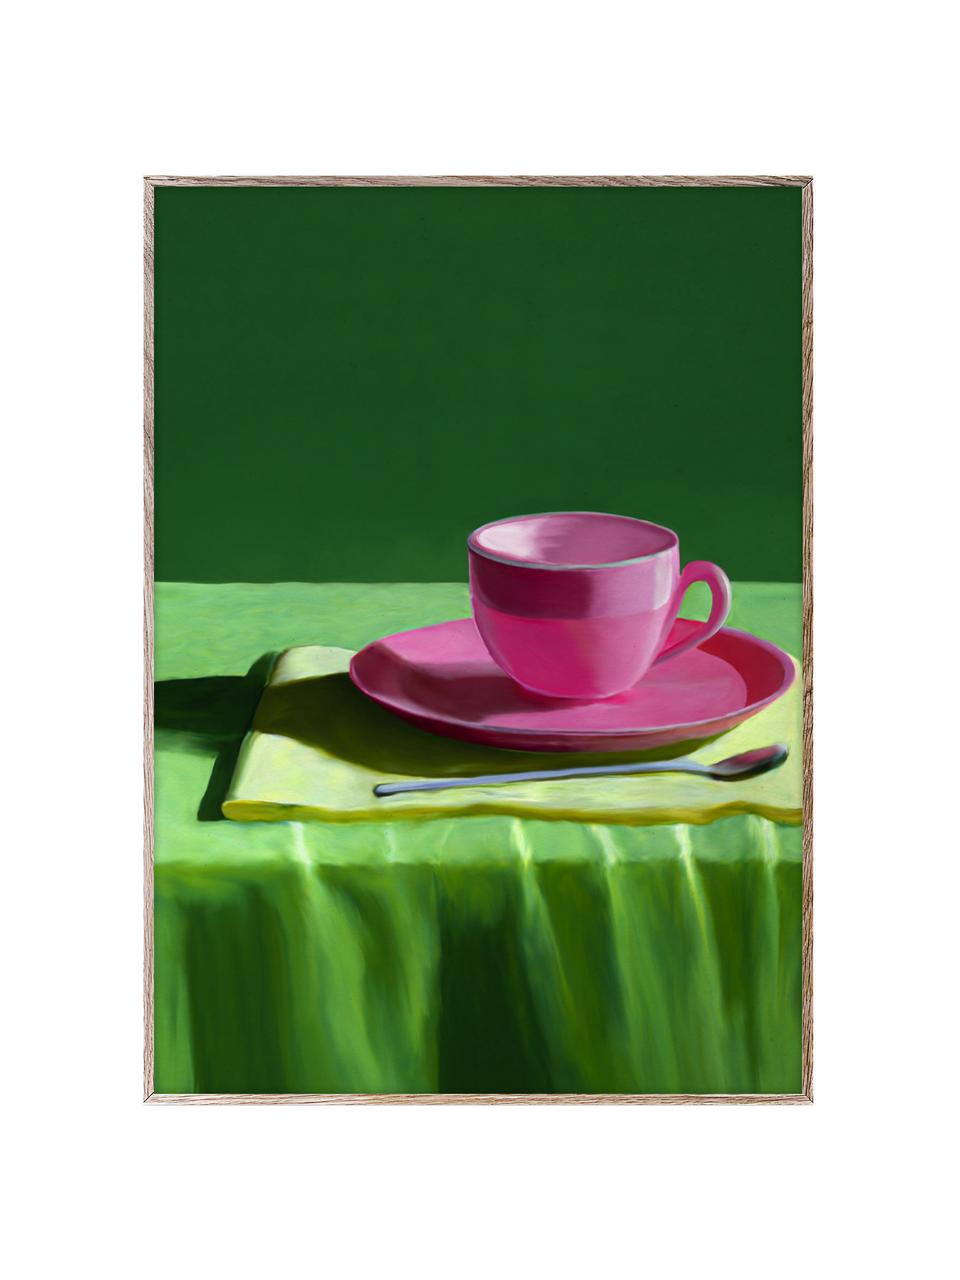 Plakát Still Here, 210g matný papír Hahnemühle, digitální tisk s 10 barvami odolnými vůči UV záření, Odstíny zelené, růžová, Š 30 cm, V 40 cm